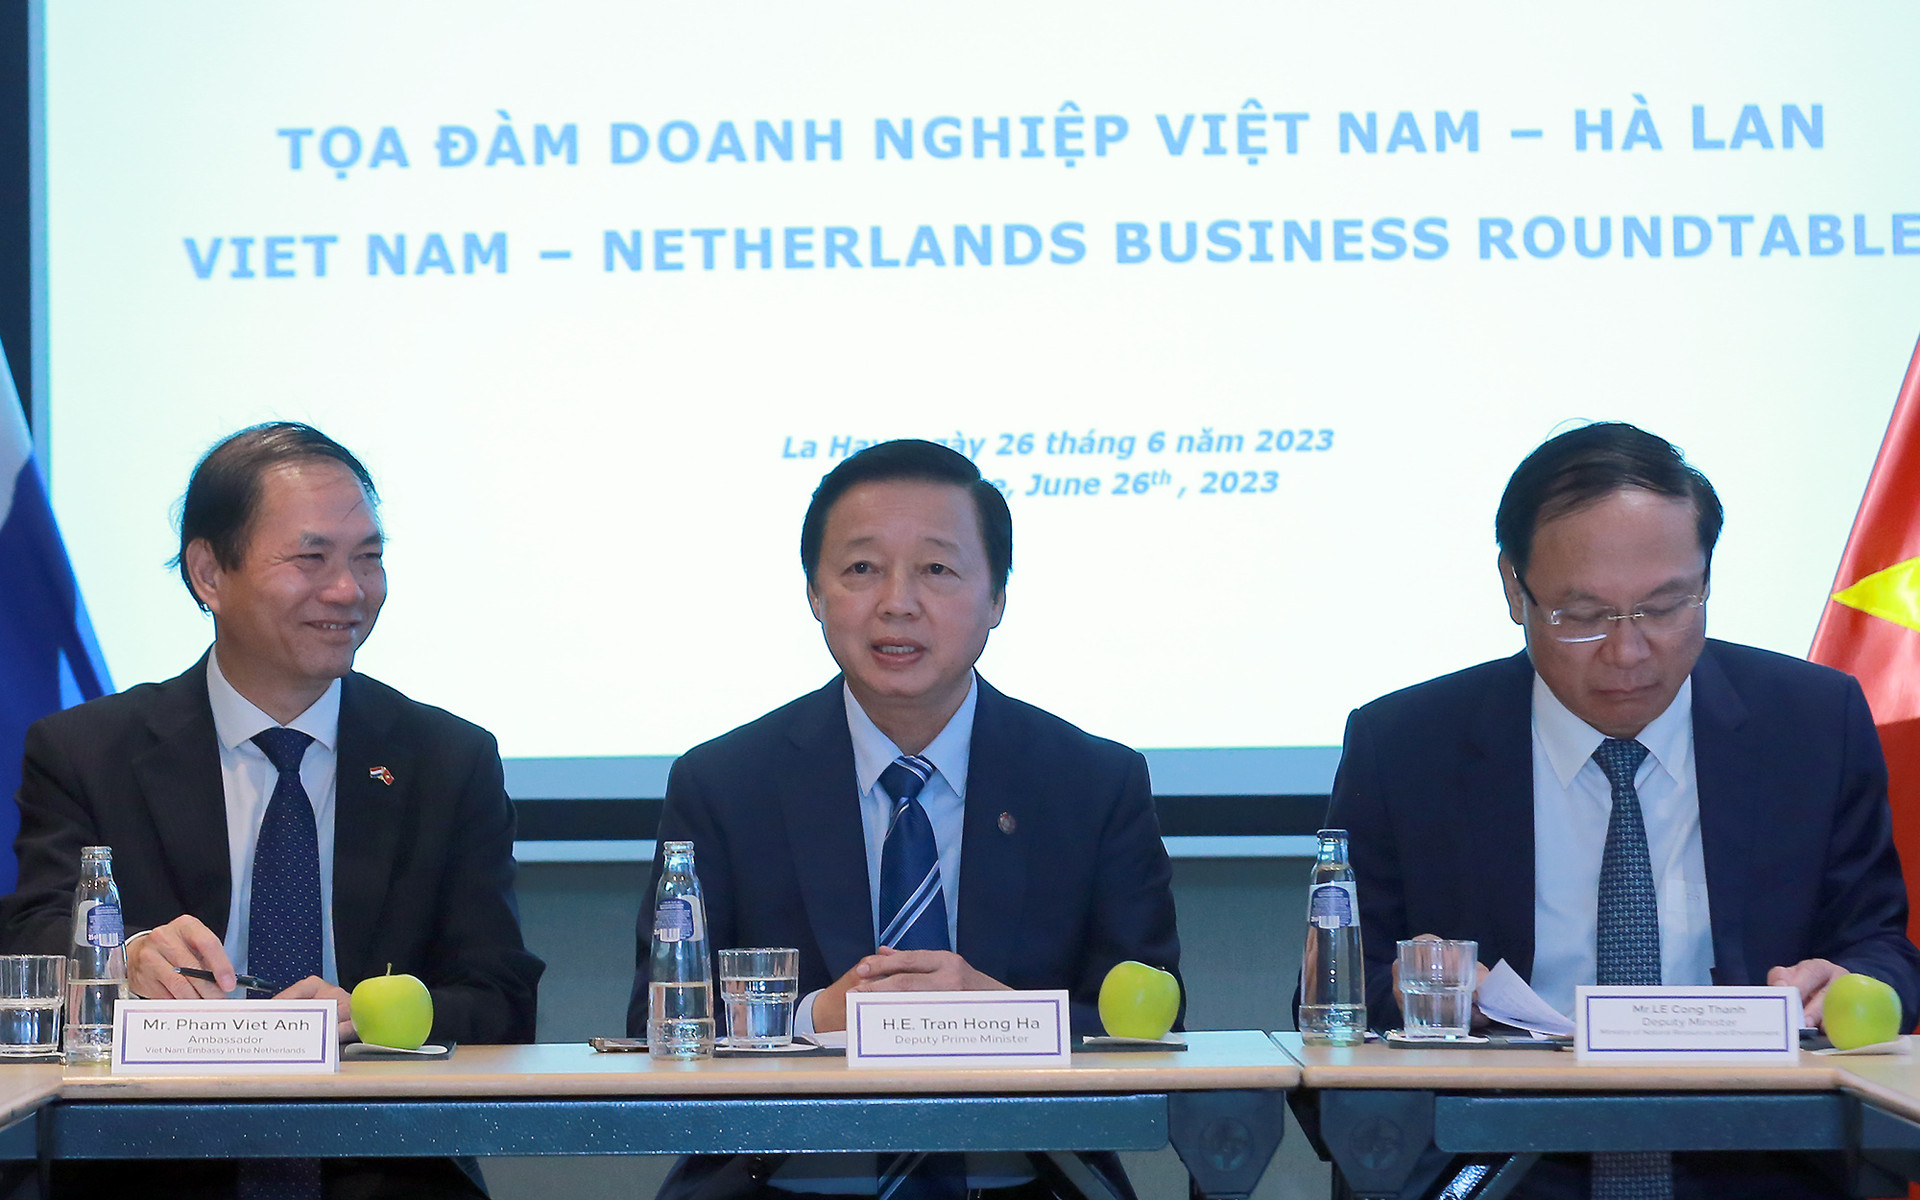 Các doanh nghiệp sẽ tiên phong thúc đẩy hợp tác Việt Nam-Hà Lan trong 50 năm tới - Ảnh 1.